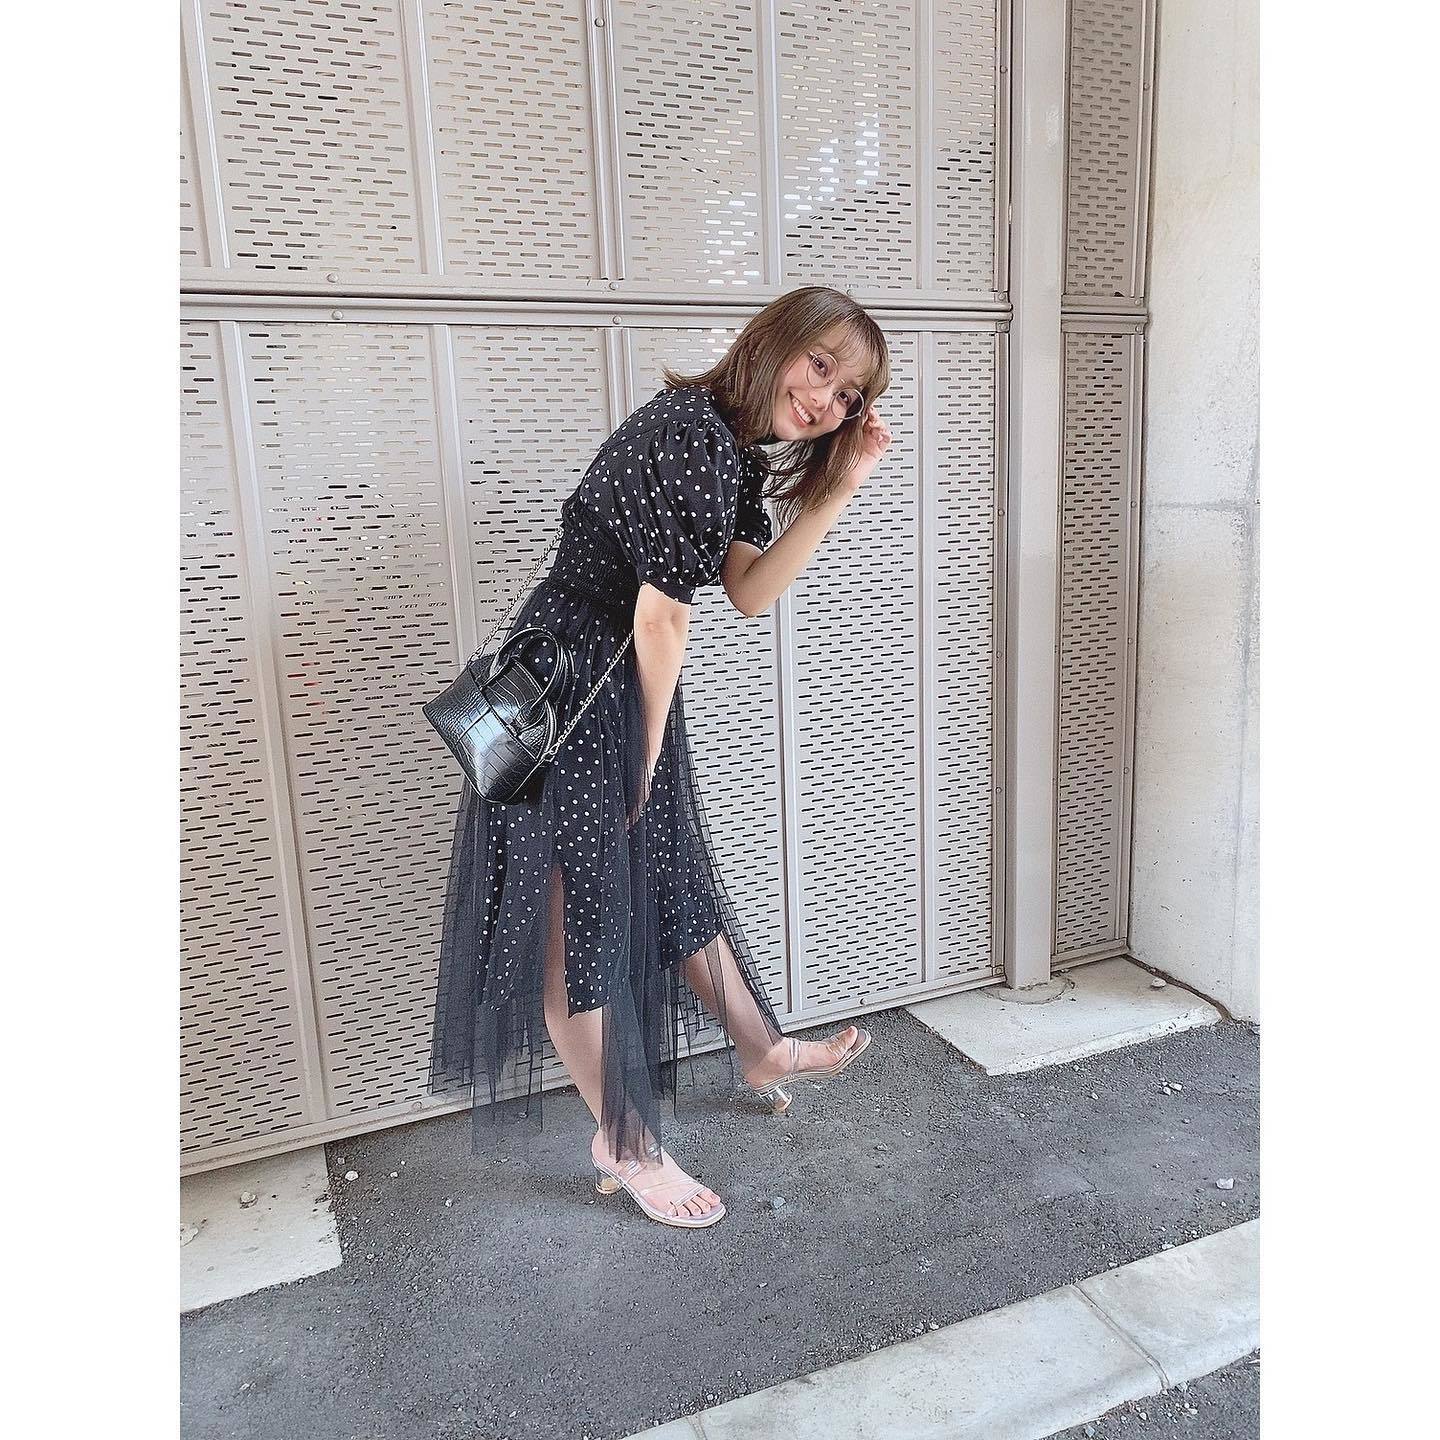 Chihaya Yoshitake's Feet - I piedi di Chihaya Yoshitake - Celebrities ...